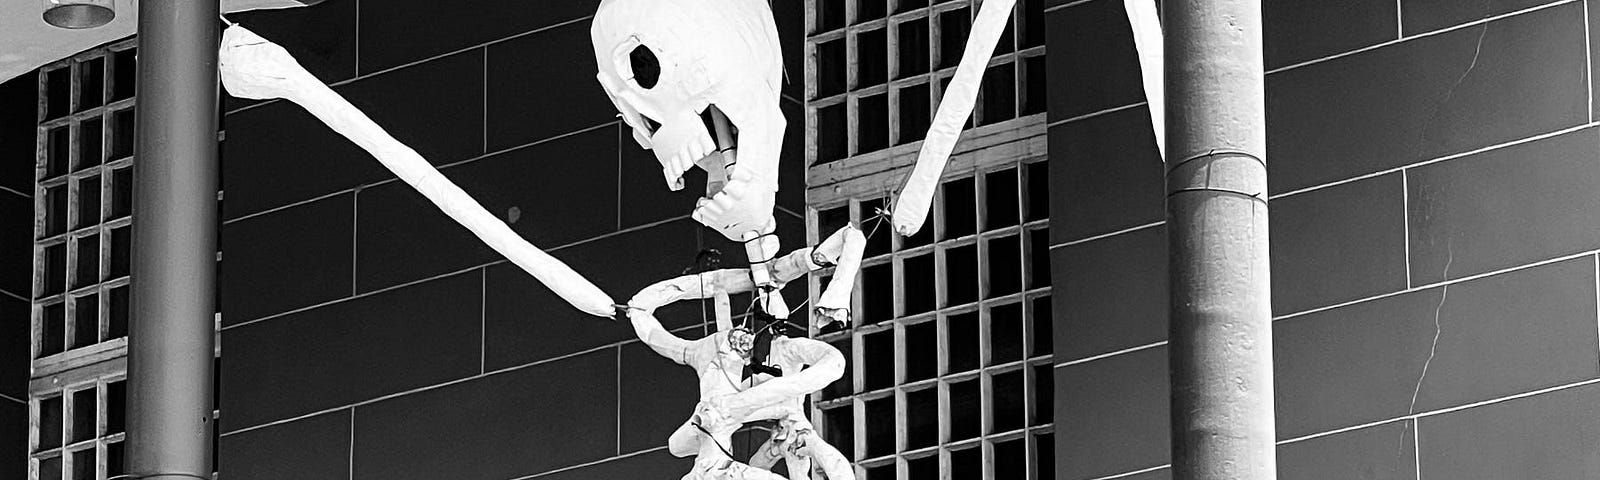 Skeleton dancing on balcony.